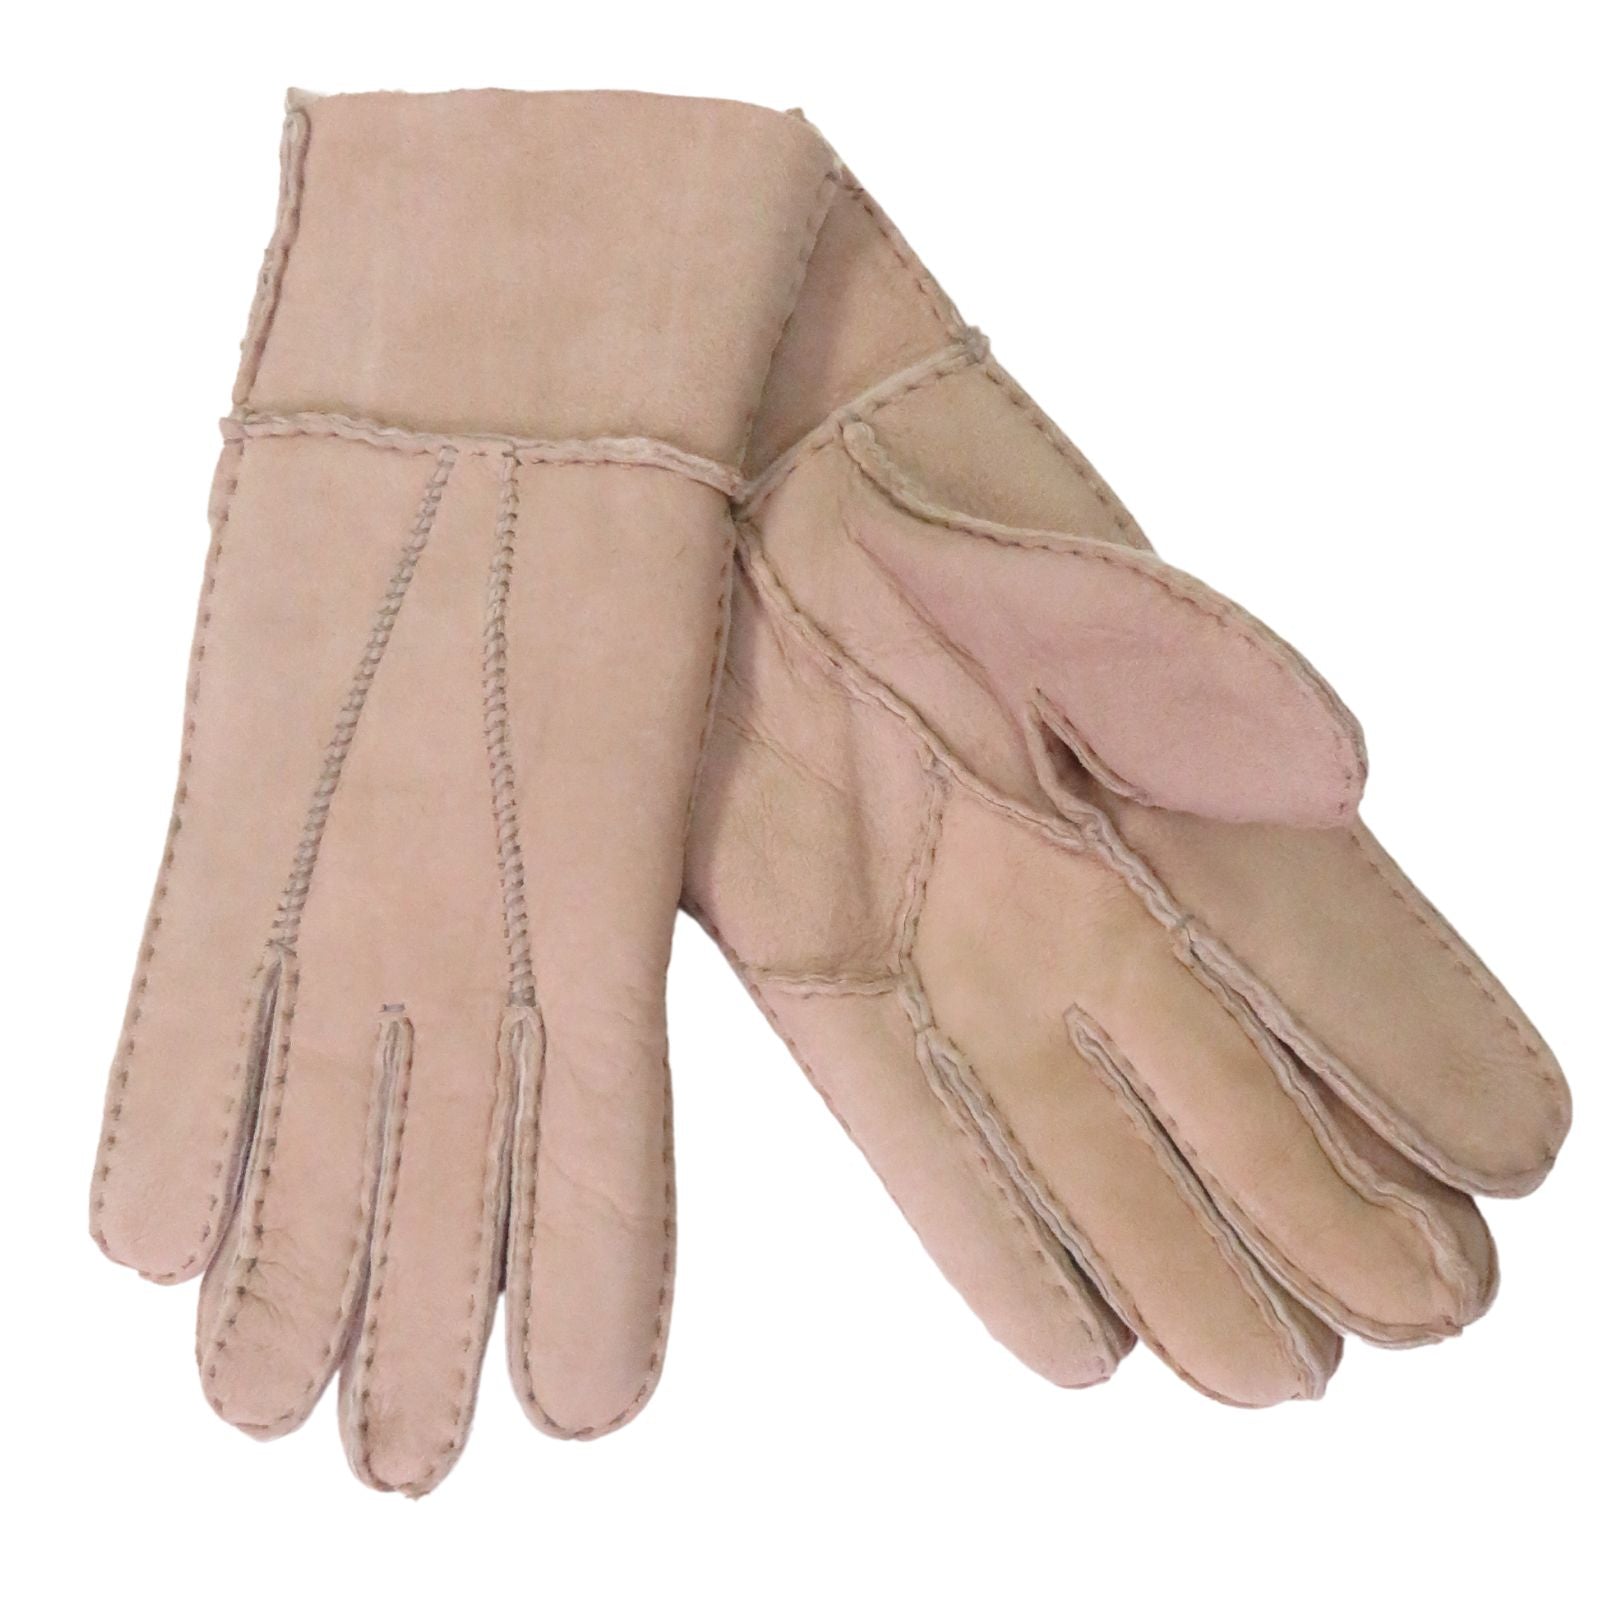 Women's Sheepskin Gloves Our "Dogwalker" In Tan